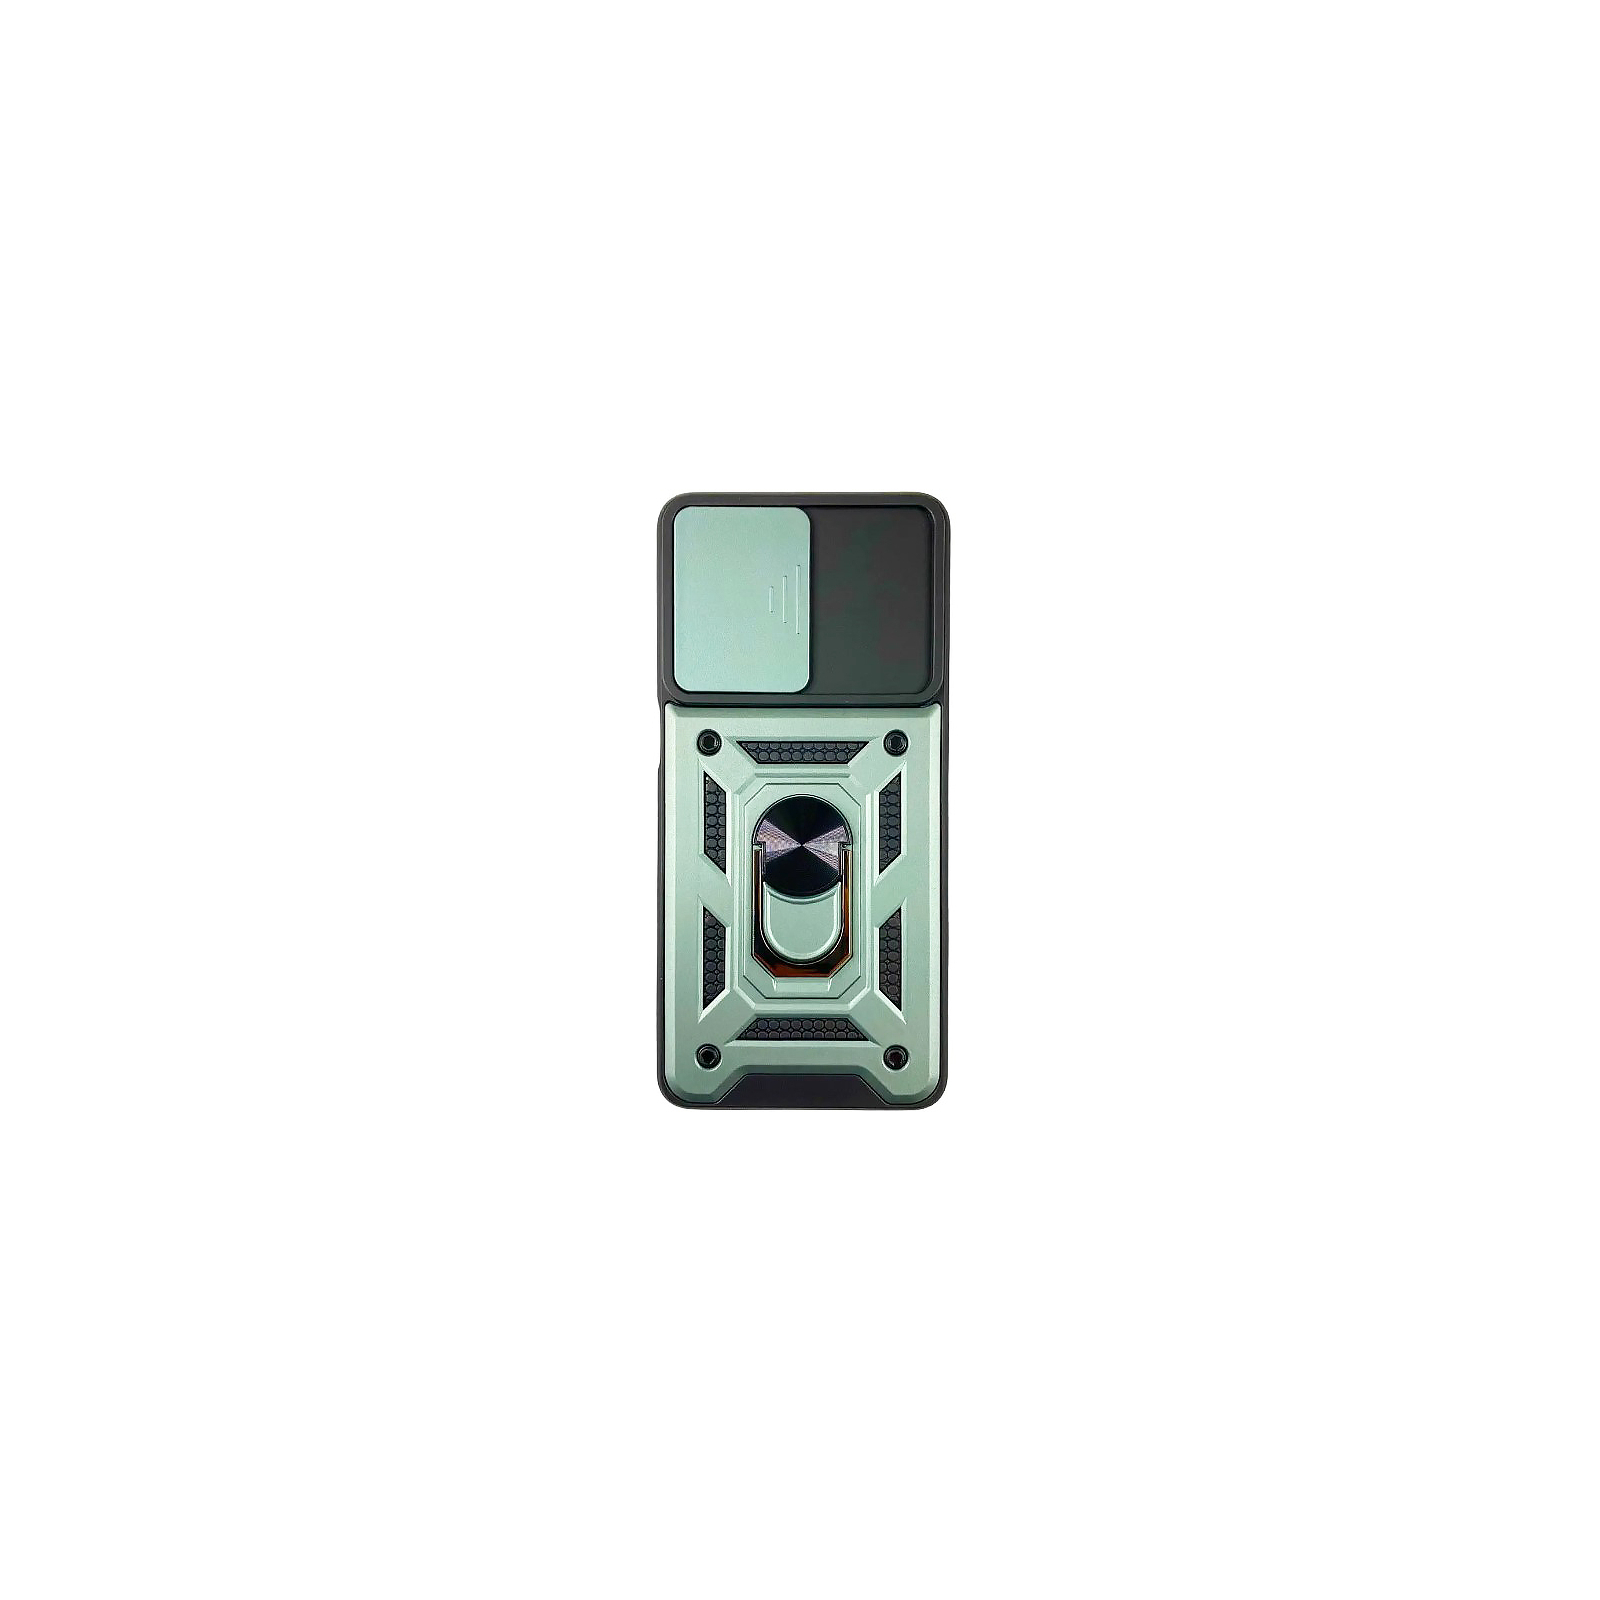 Чехол для мобильного телефона BeCover Military Motorola Moto G22 Black (708186)